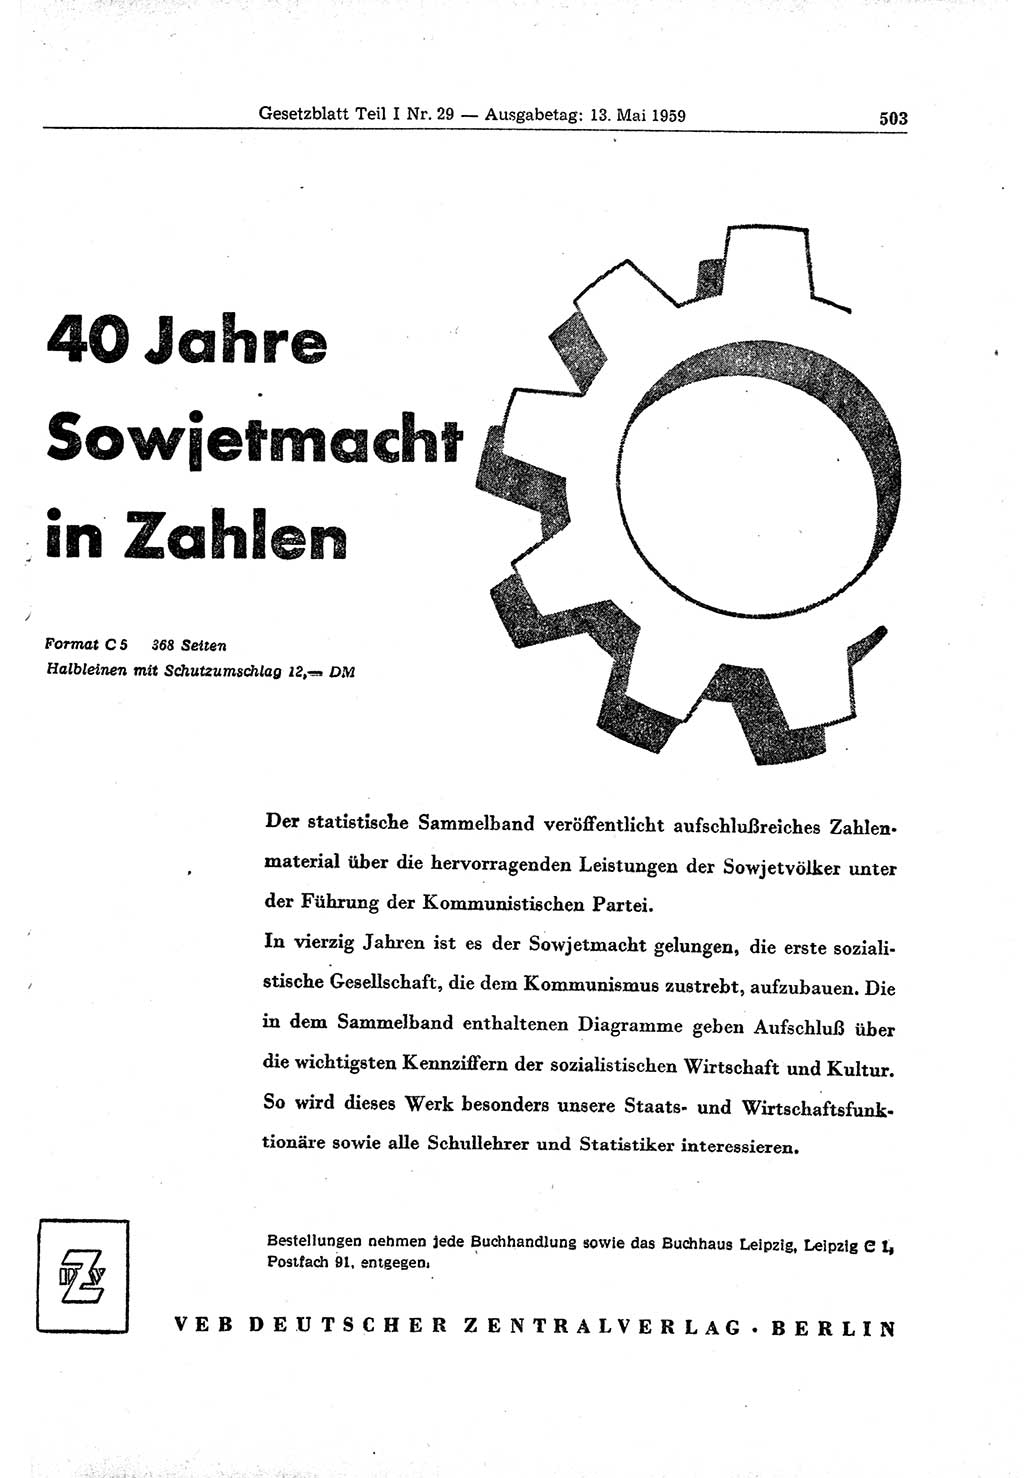 Gesetzblatt (GBl.) der Deutschen Demokratischen Republik (DDR) Teil Ⅰ 1959, Seite 503 (GBl. DDR Ⅰ 1959, S. 503)